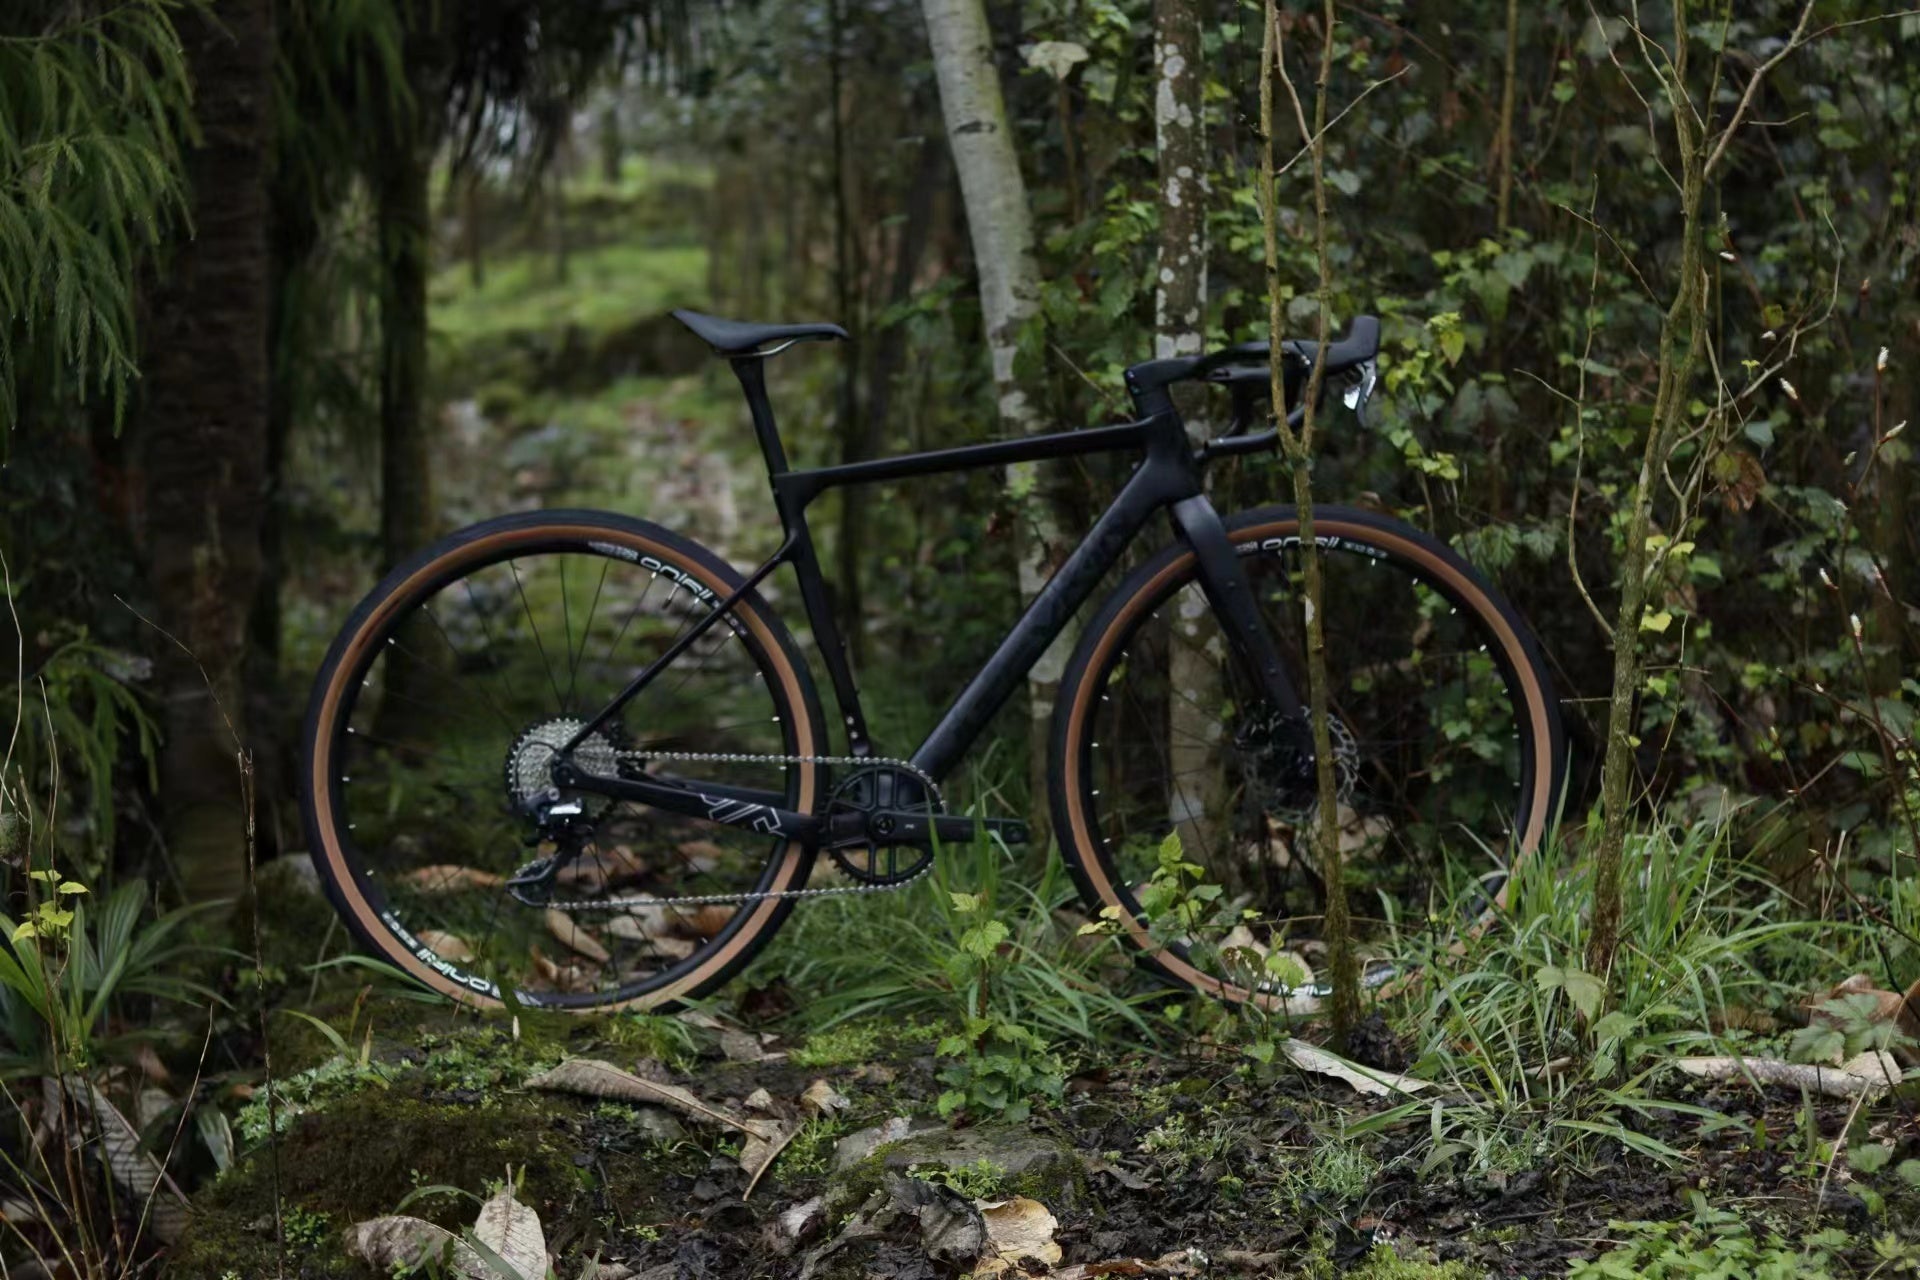 Kylin Carbon Gravel Bike Frame Fully Hidden Cable EPS Frame